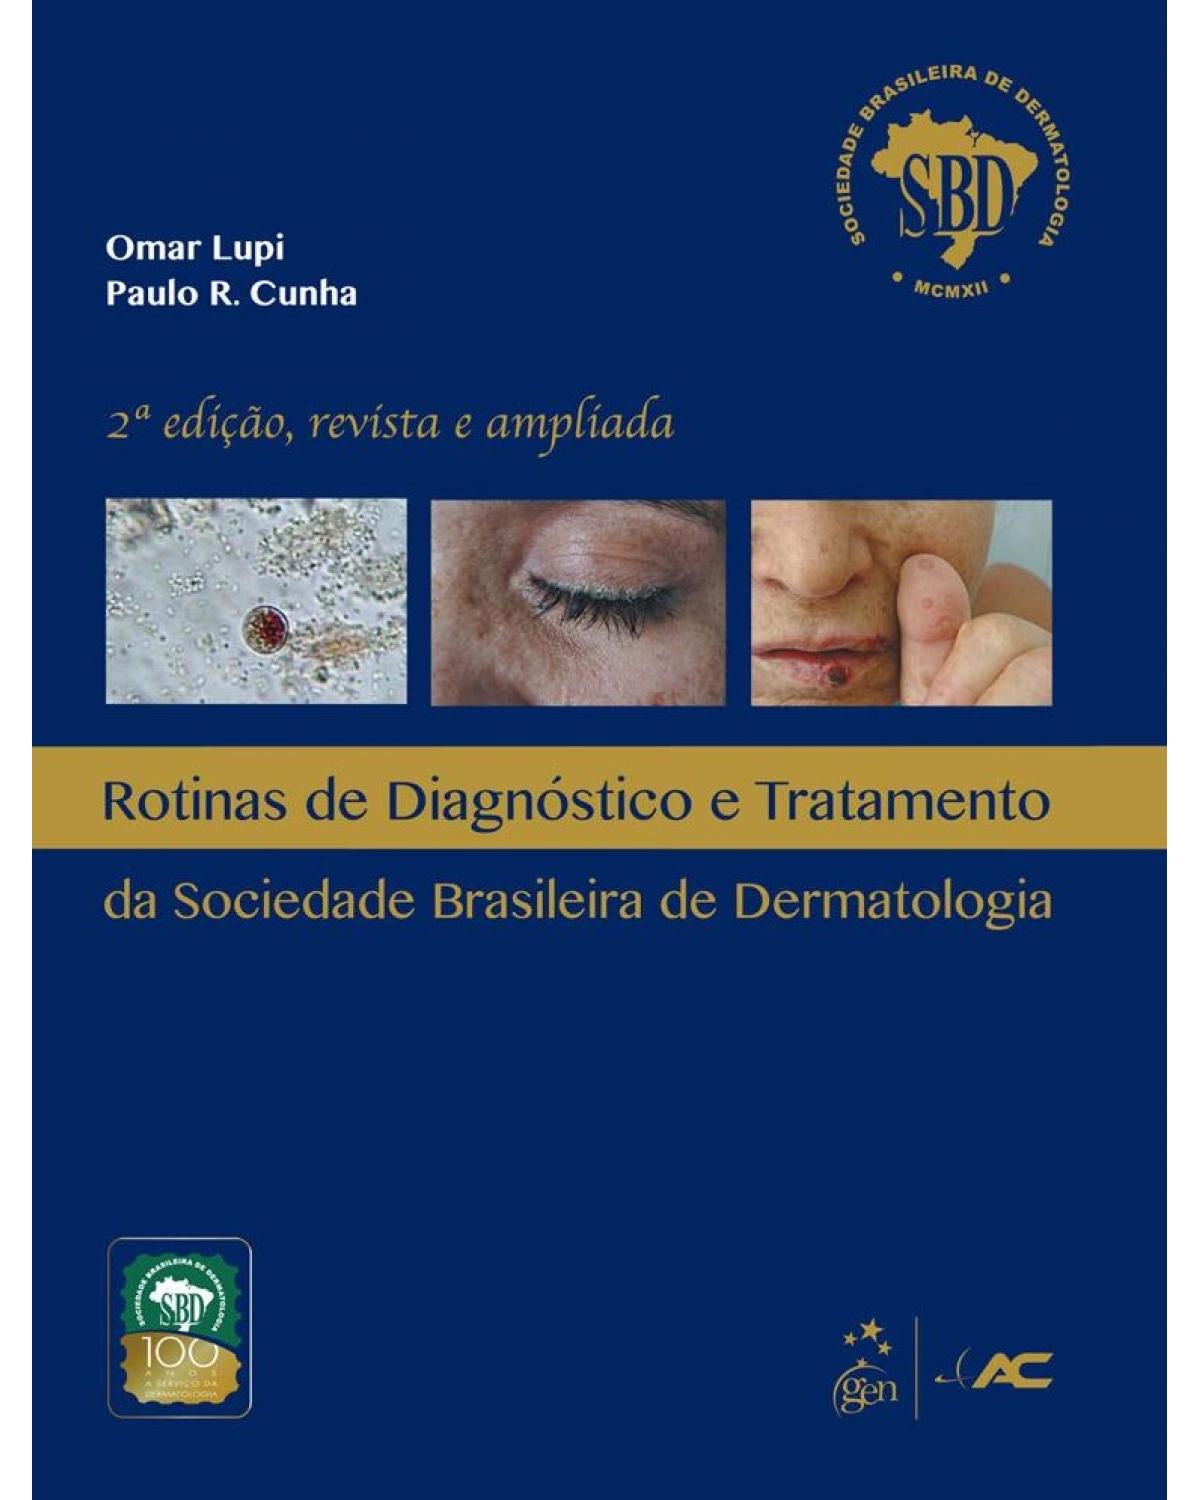 Rotinas de diagnóstico e tratamento da Sociedade Brasileira de Dermatologia - 2ª Edição | 2012